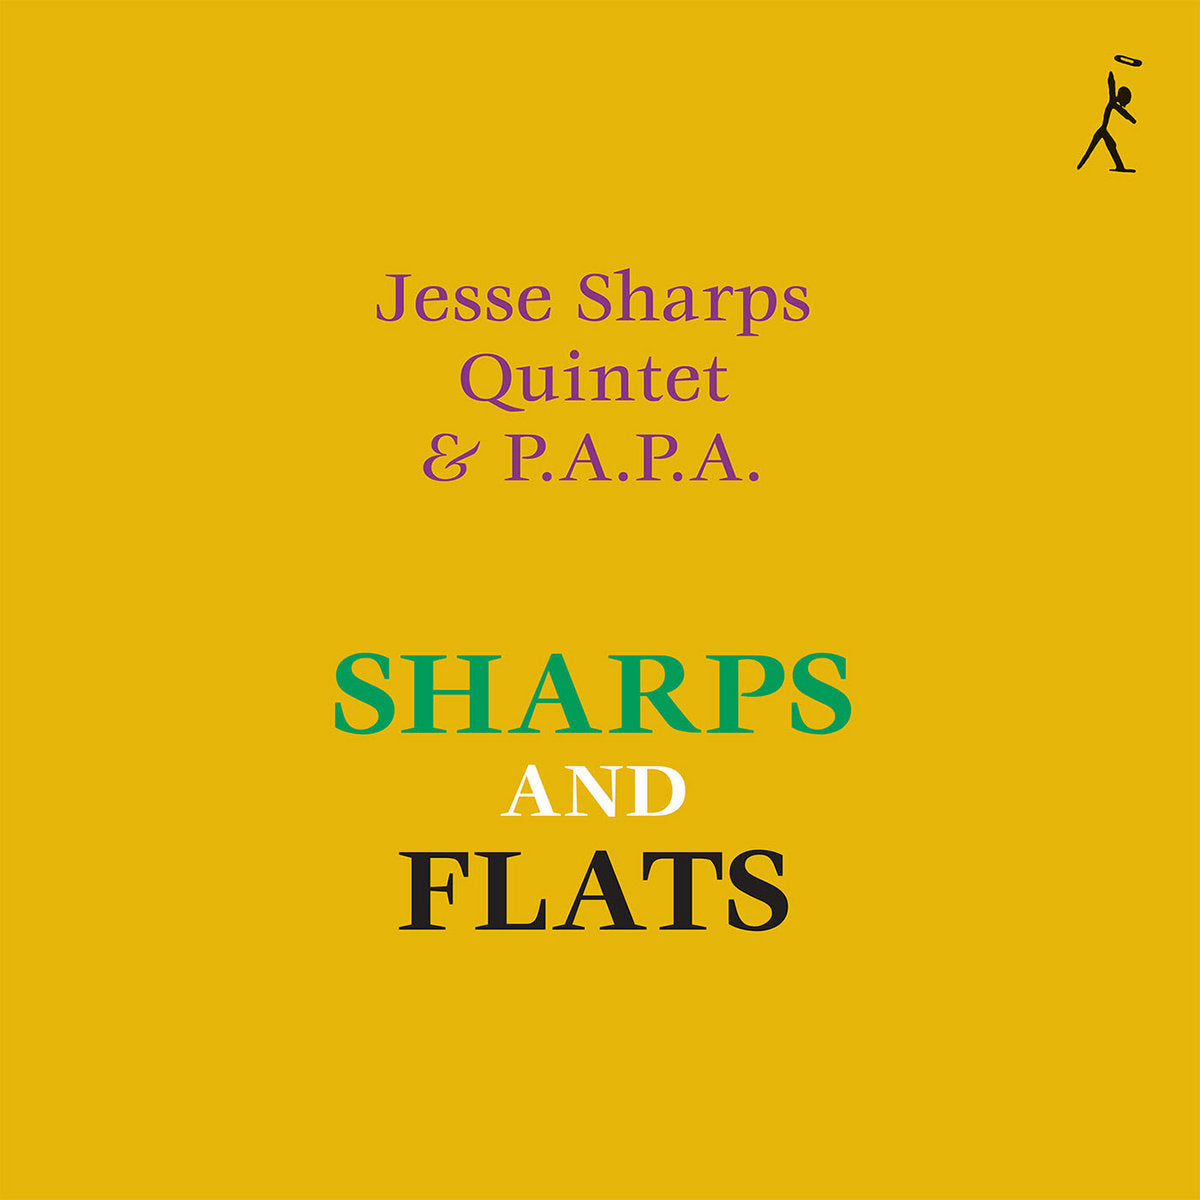 Jesse Sharps Quintet & P.A.P.A - Sharps And Flats